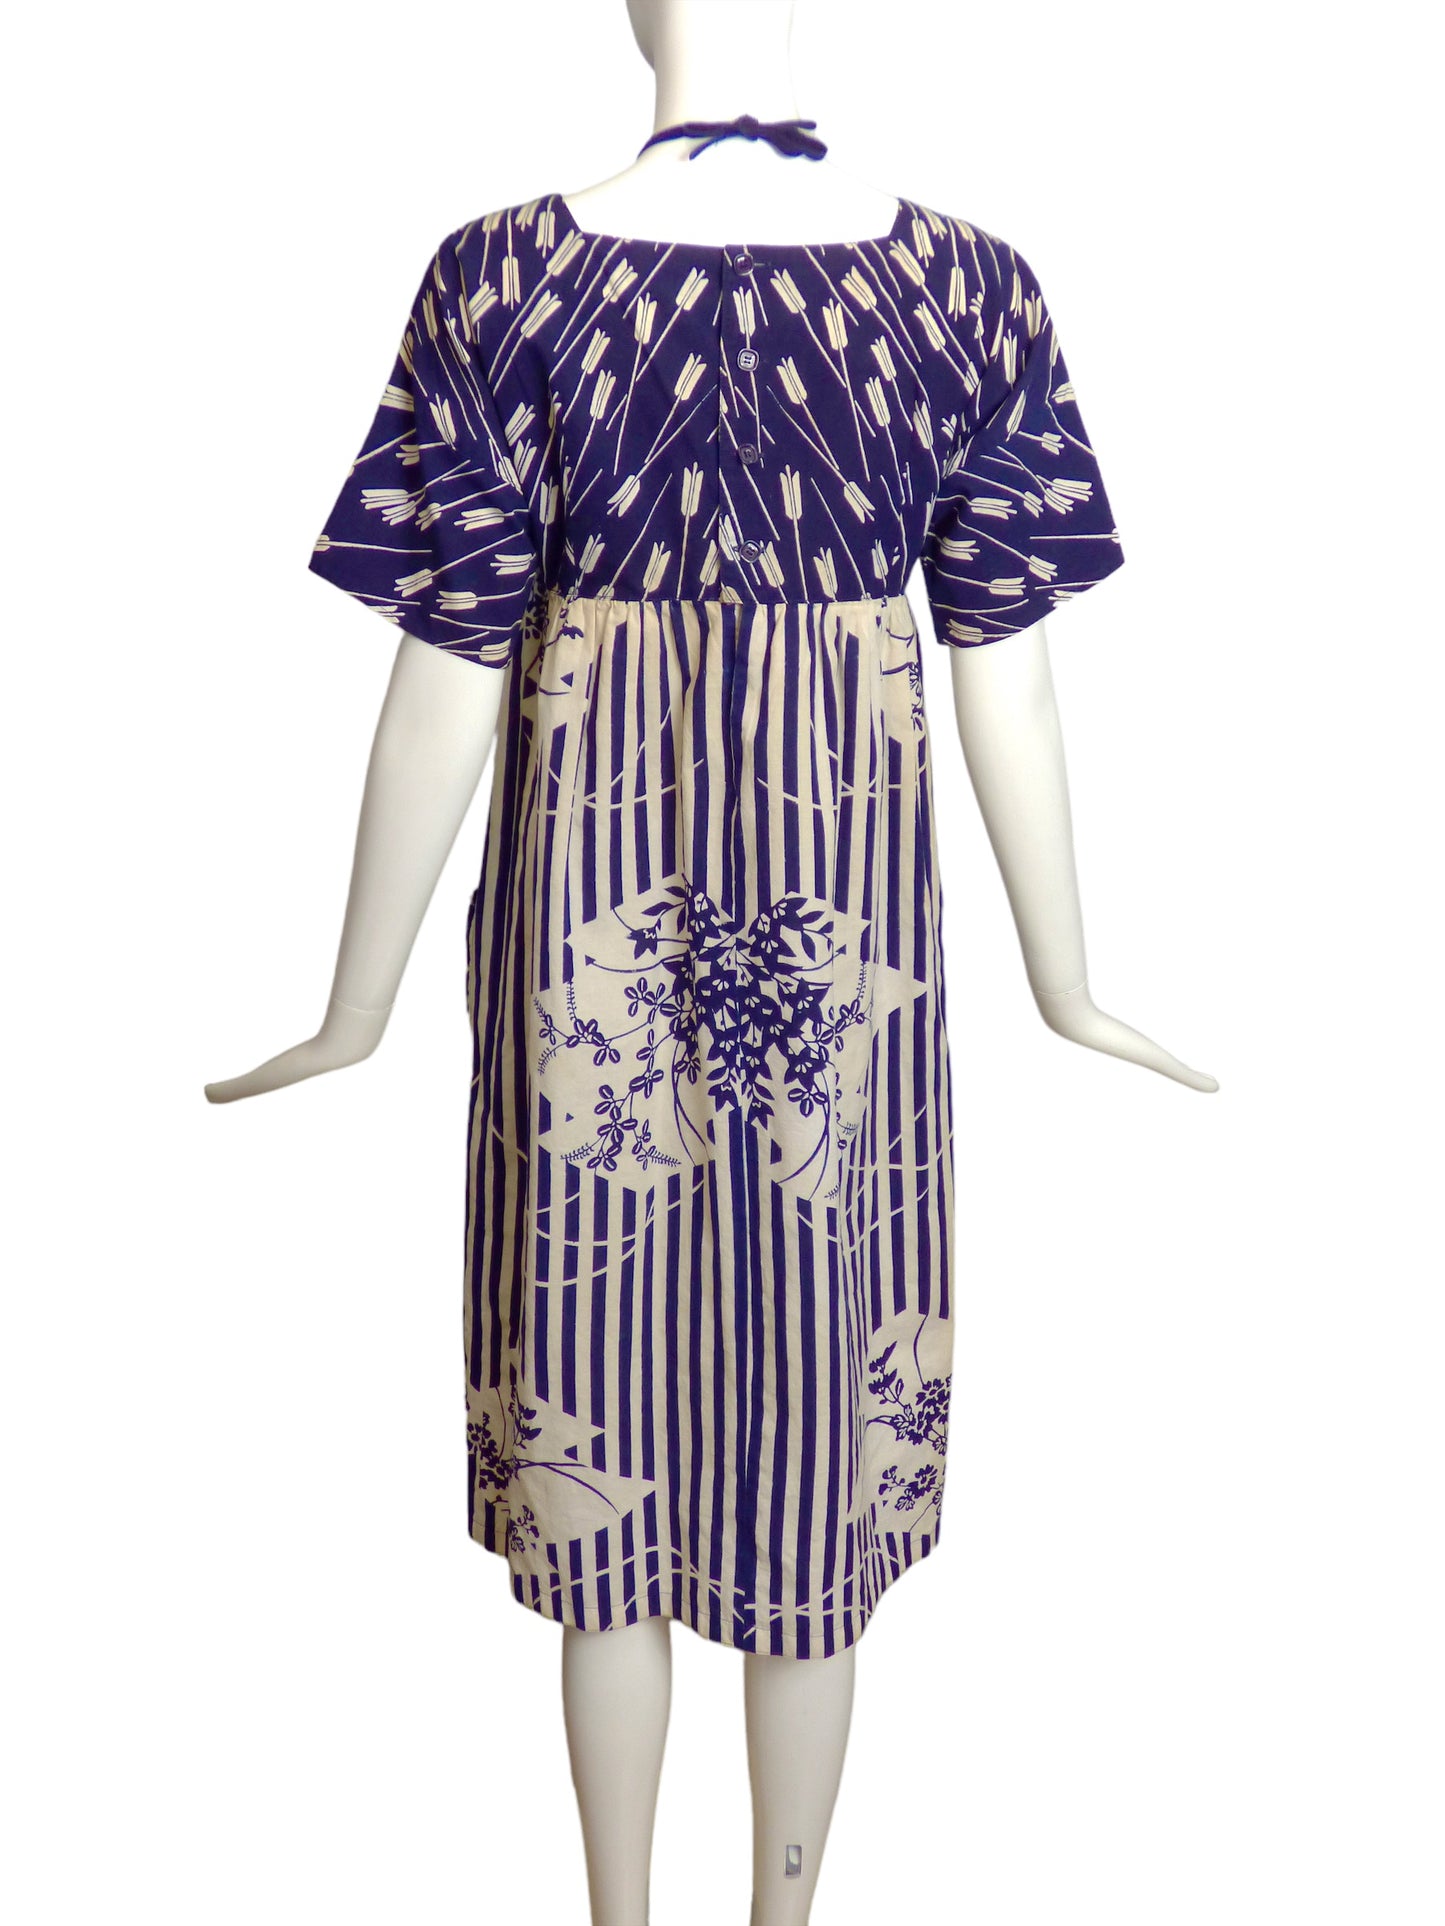 HANAE MORI- 1980s Cotton Print Dress, Size 8